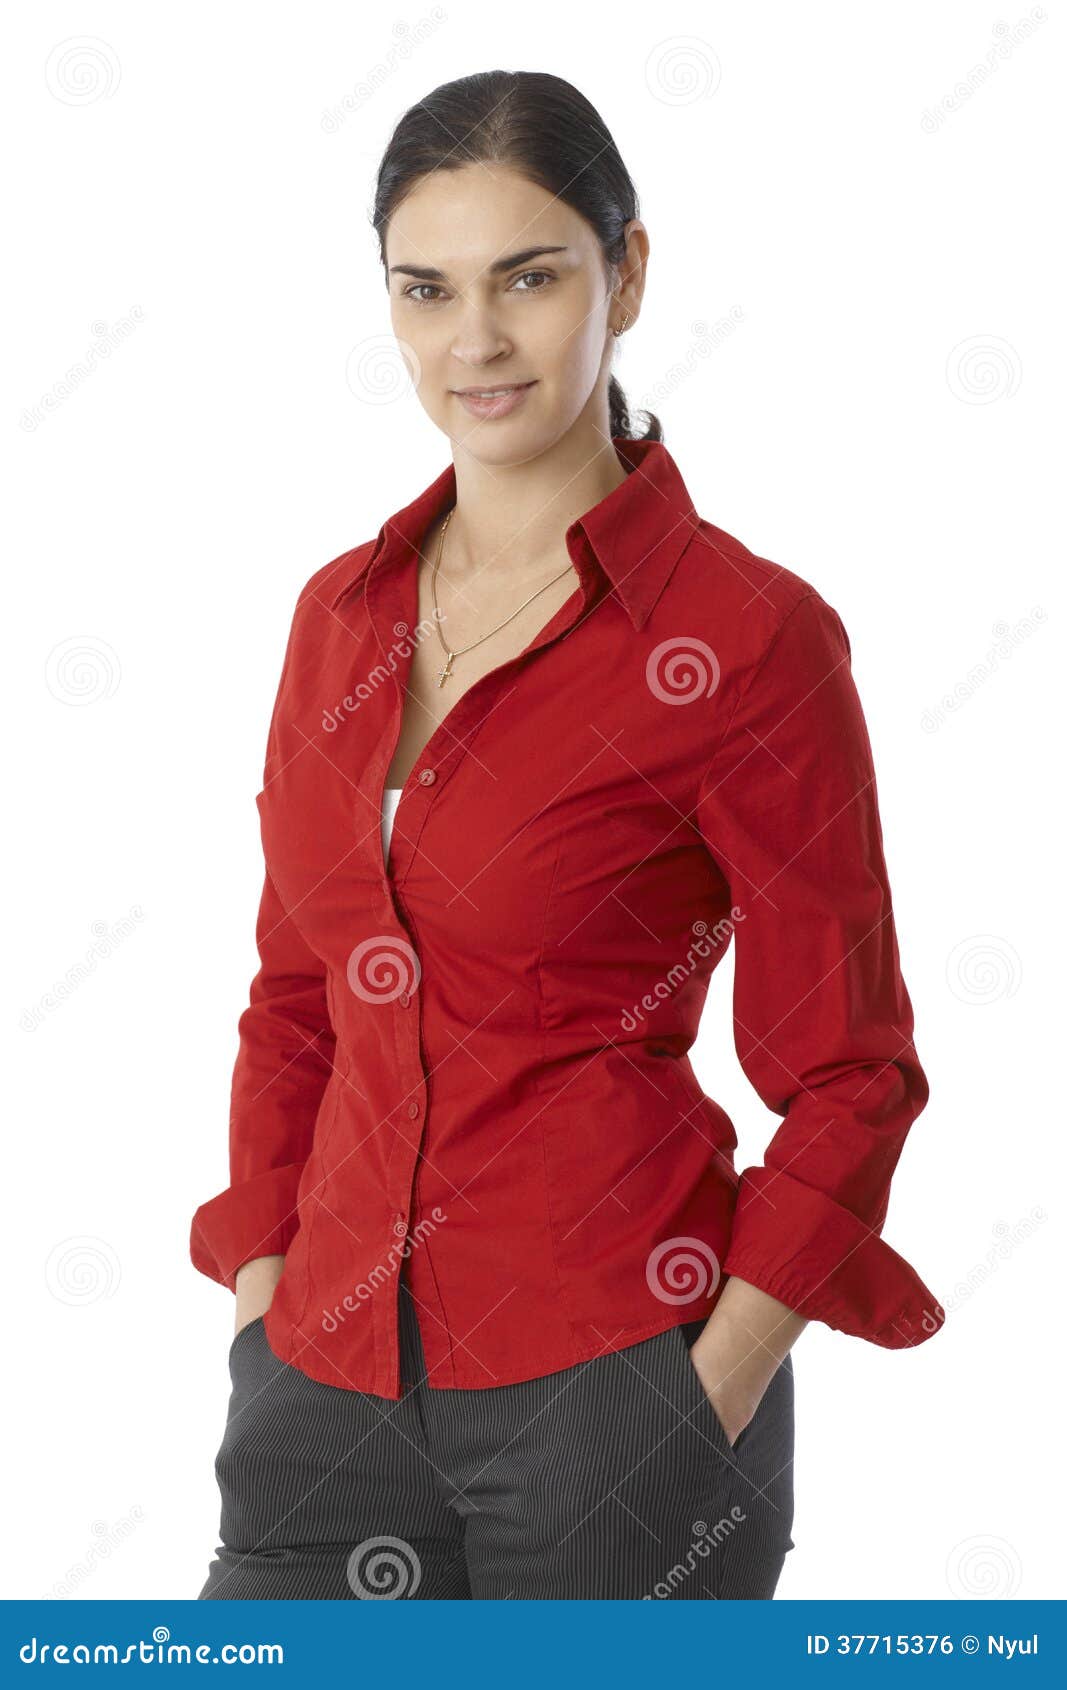 Viento Ingenioso Casi muerto Retrato De La Mujer Joven Casual En Blusa Roja Foto de archivo - Imagen de  coleta, americano: 37715376